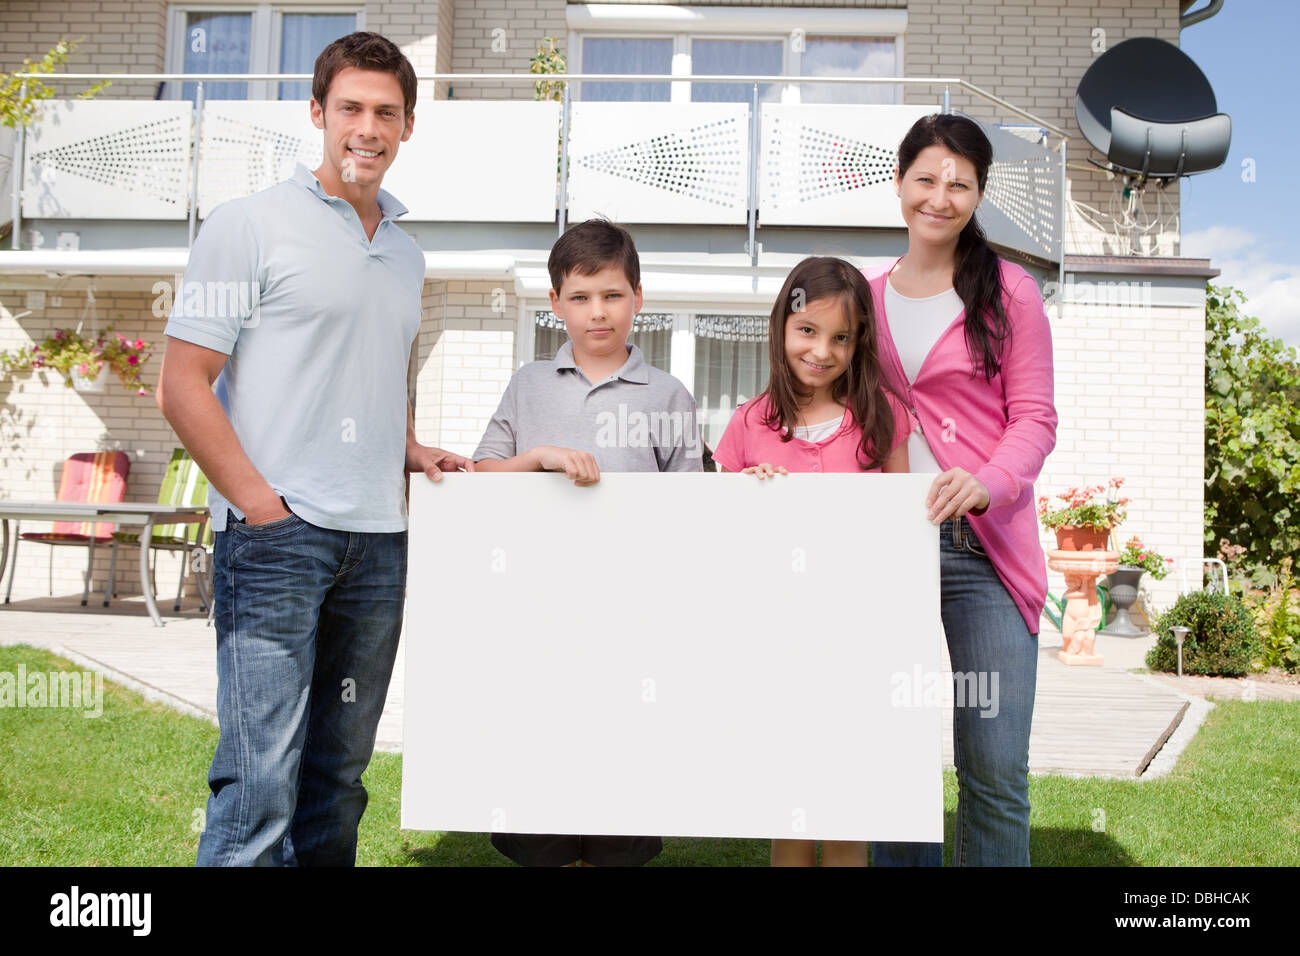 Familia Joven sosteniendo una placa en blanco y negro Foto de stock